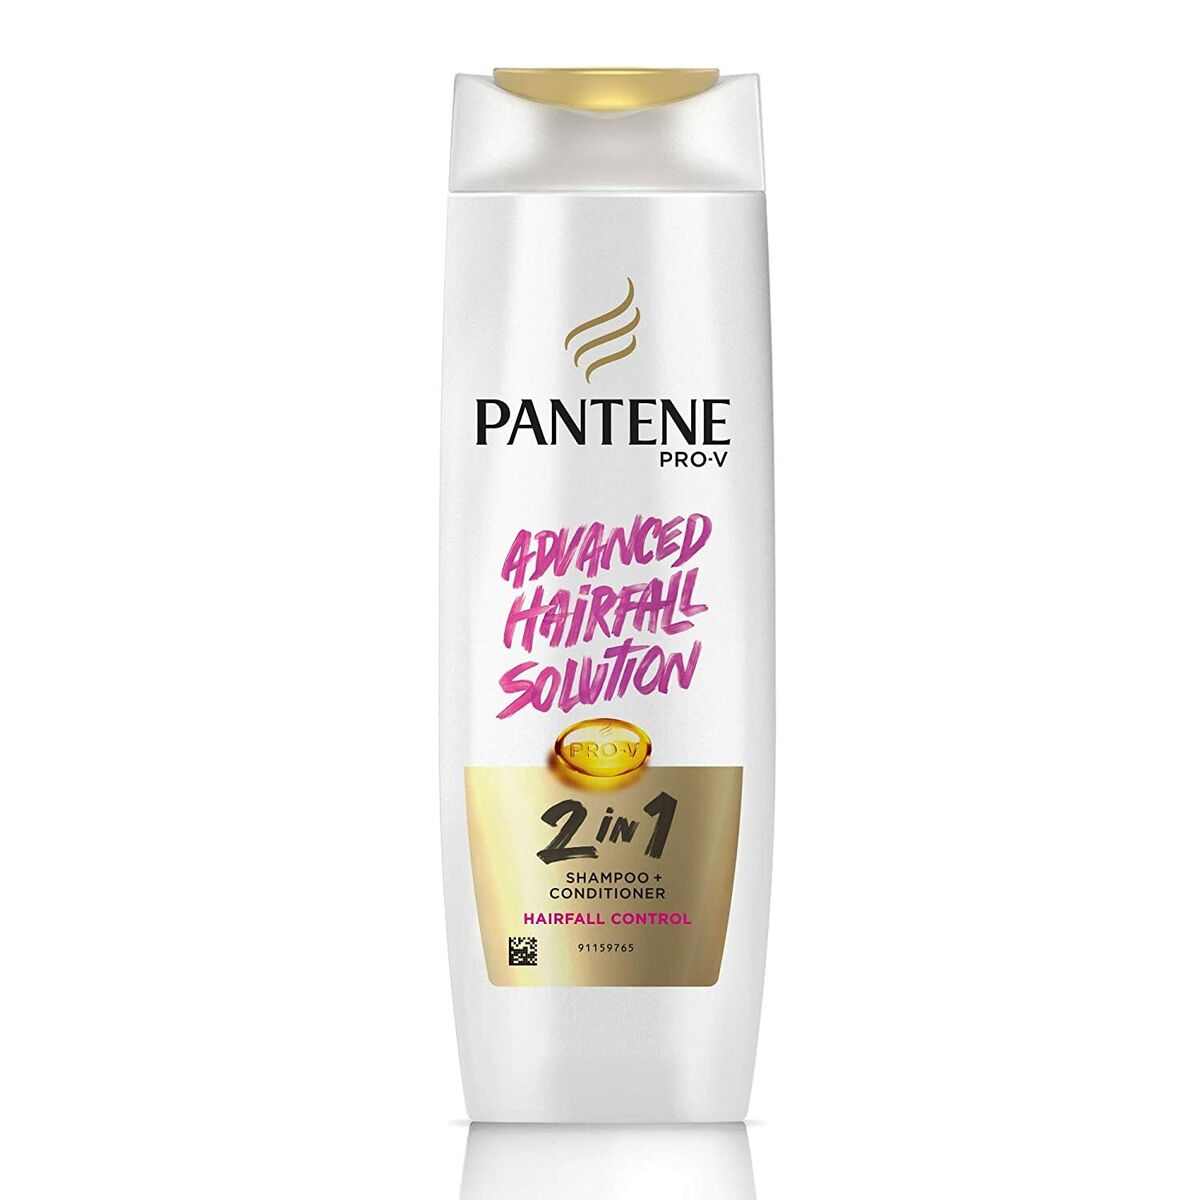 szampon pantene przeciw wypadaniu włosów